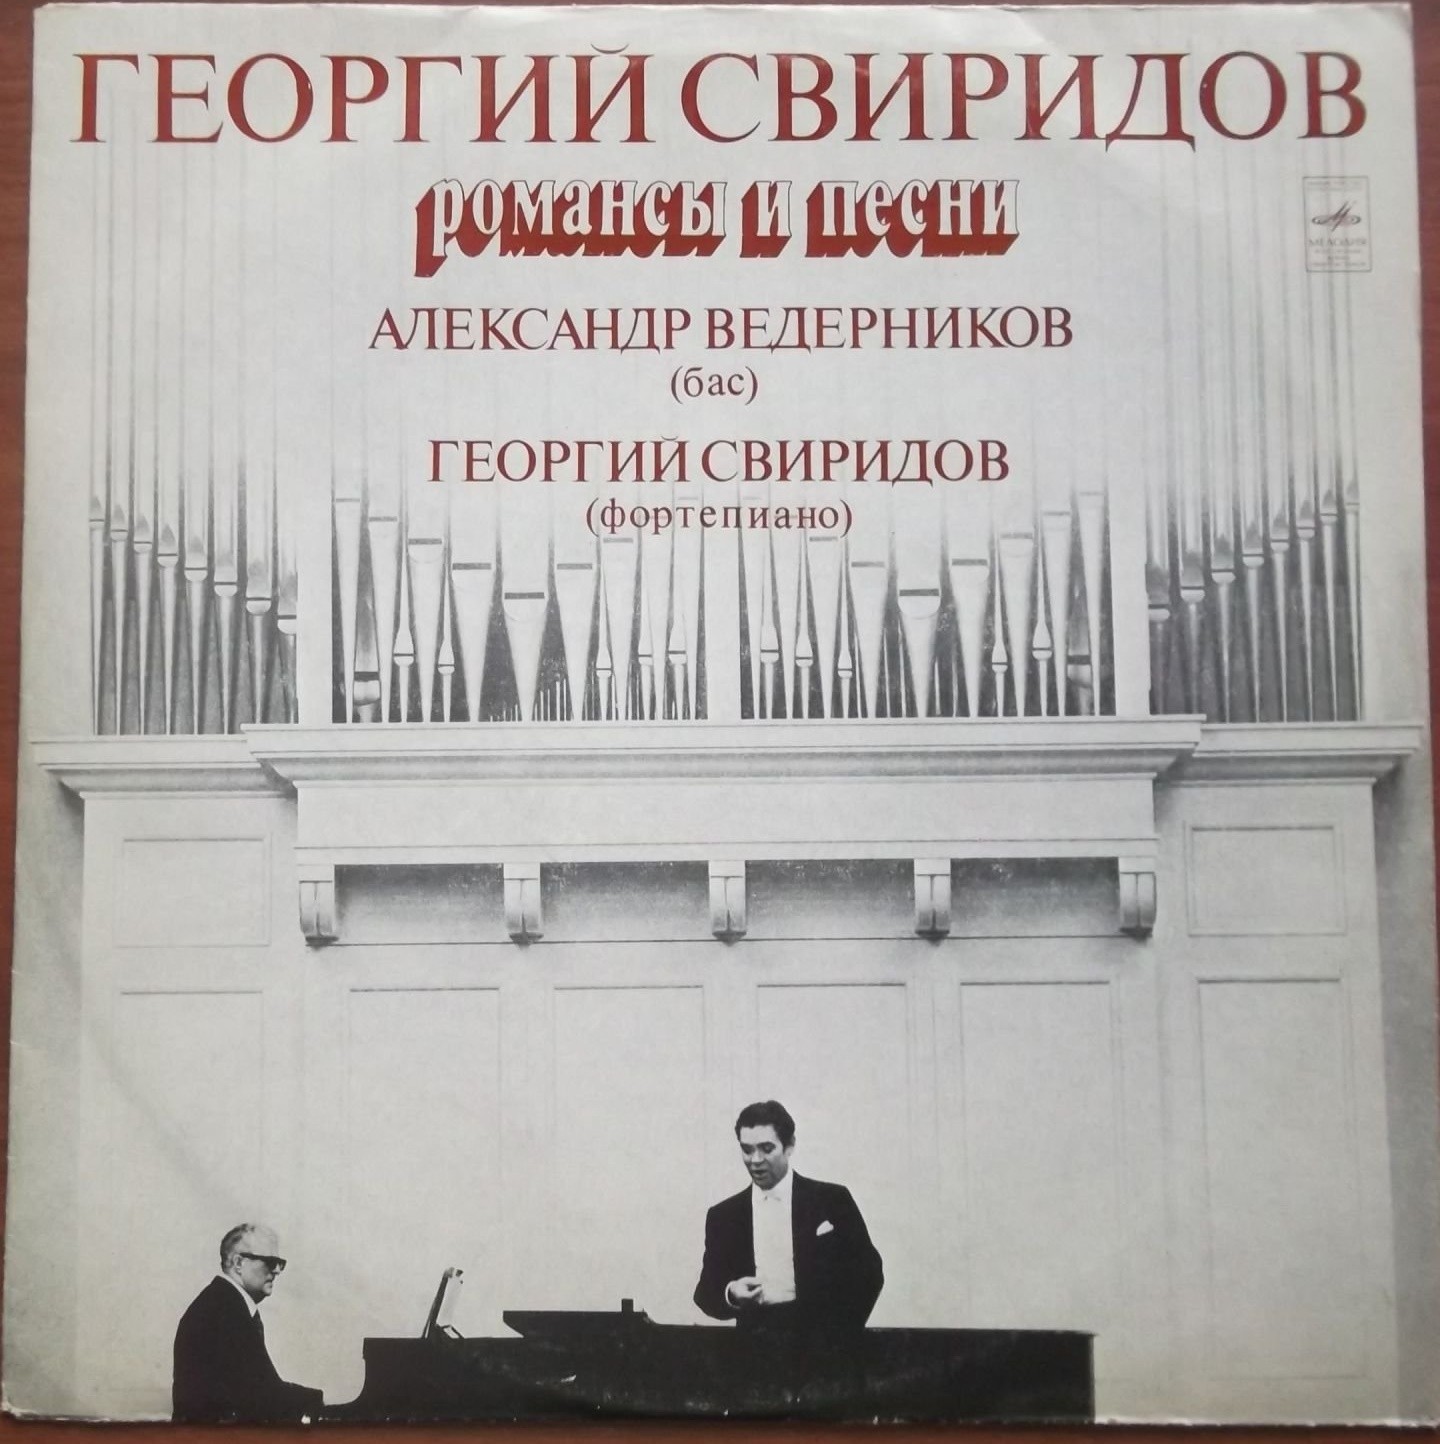 Г. Свиридов: Романсы и песни (А. Ведерников, бас)